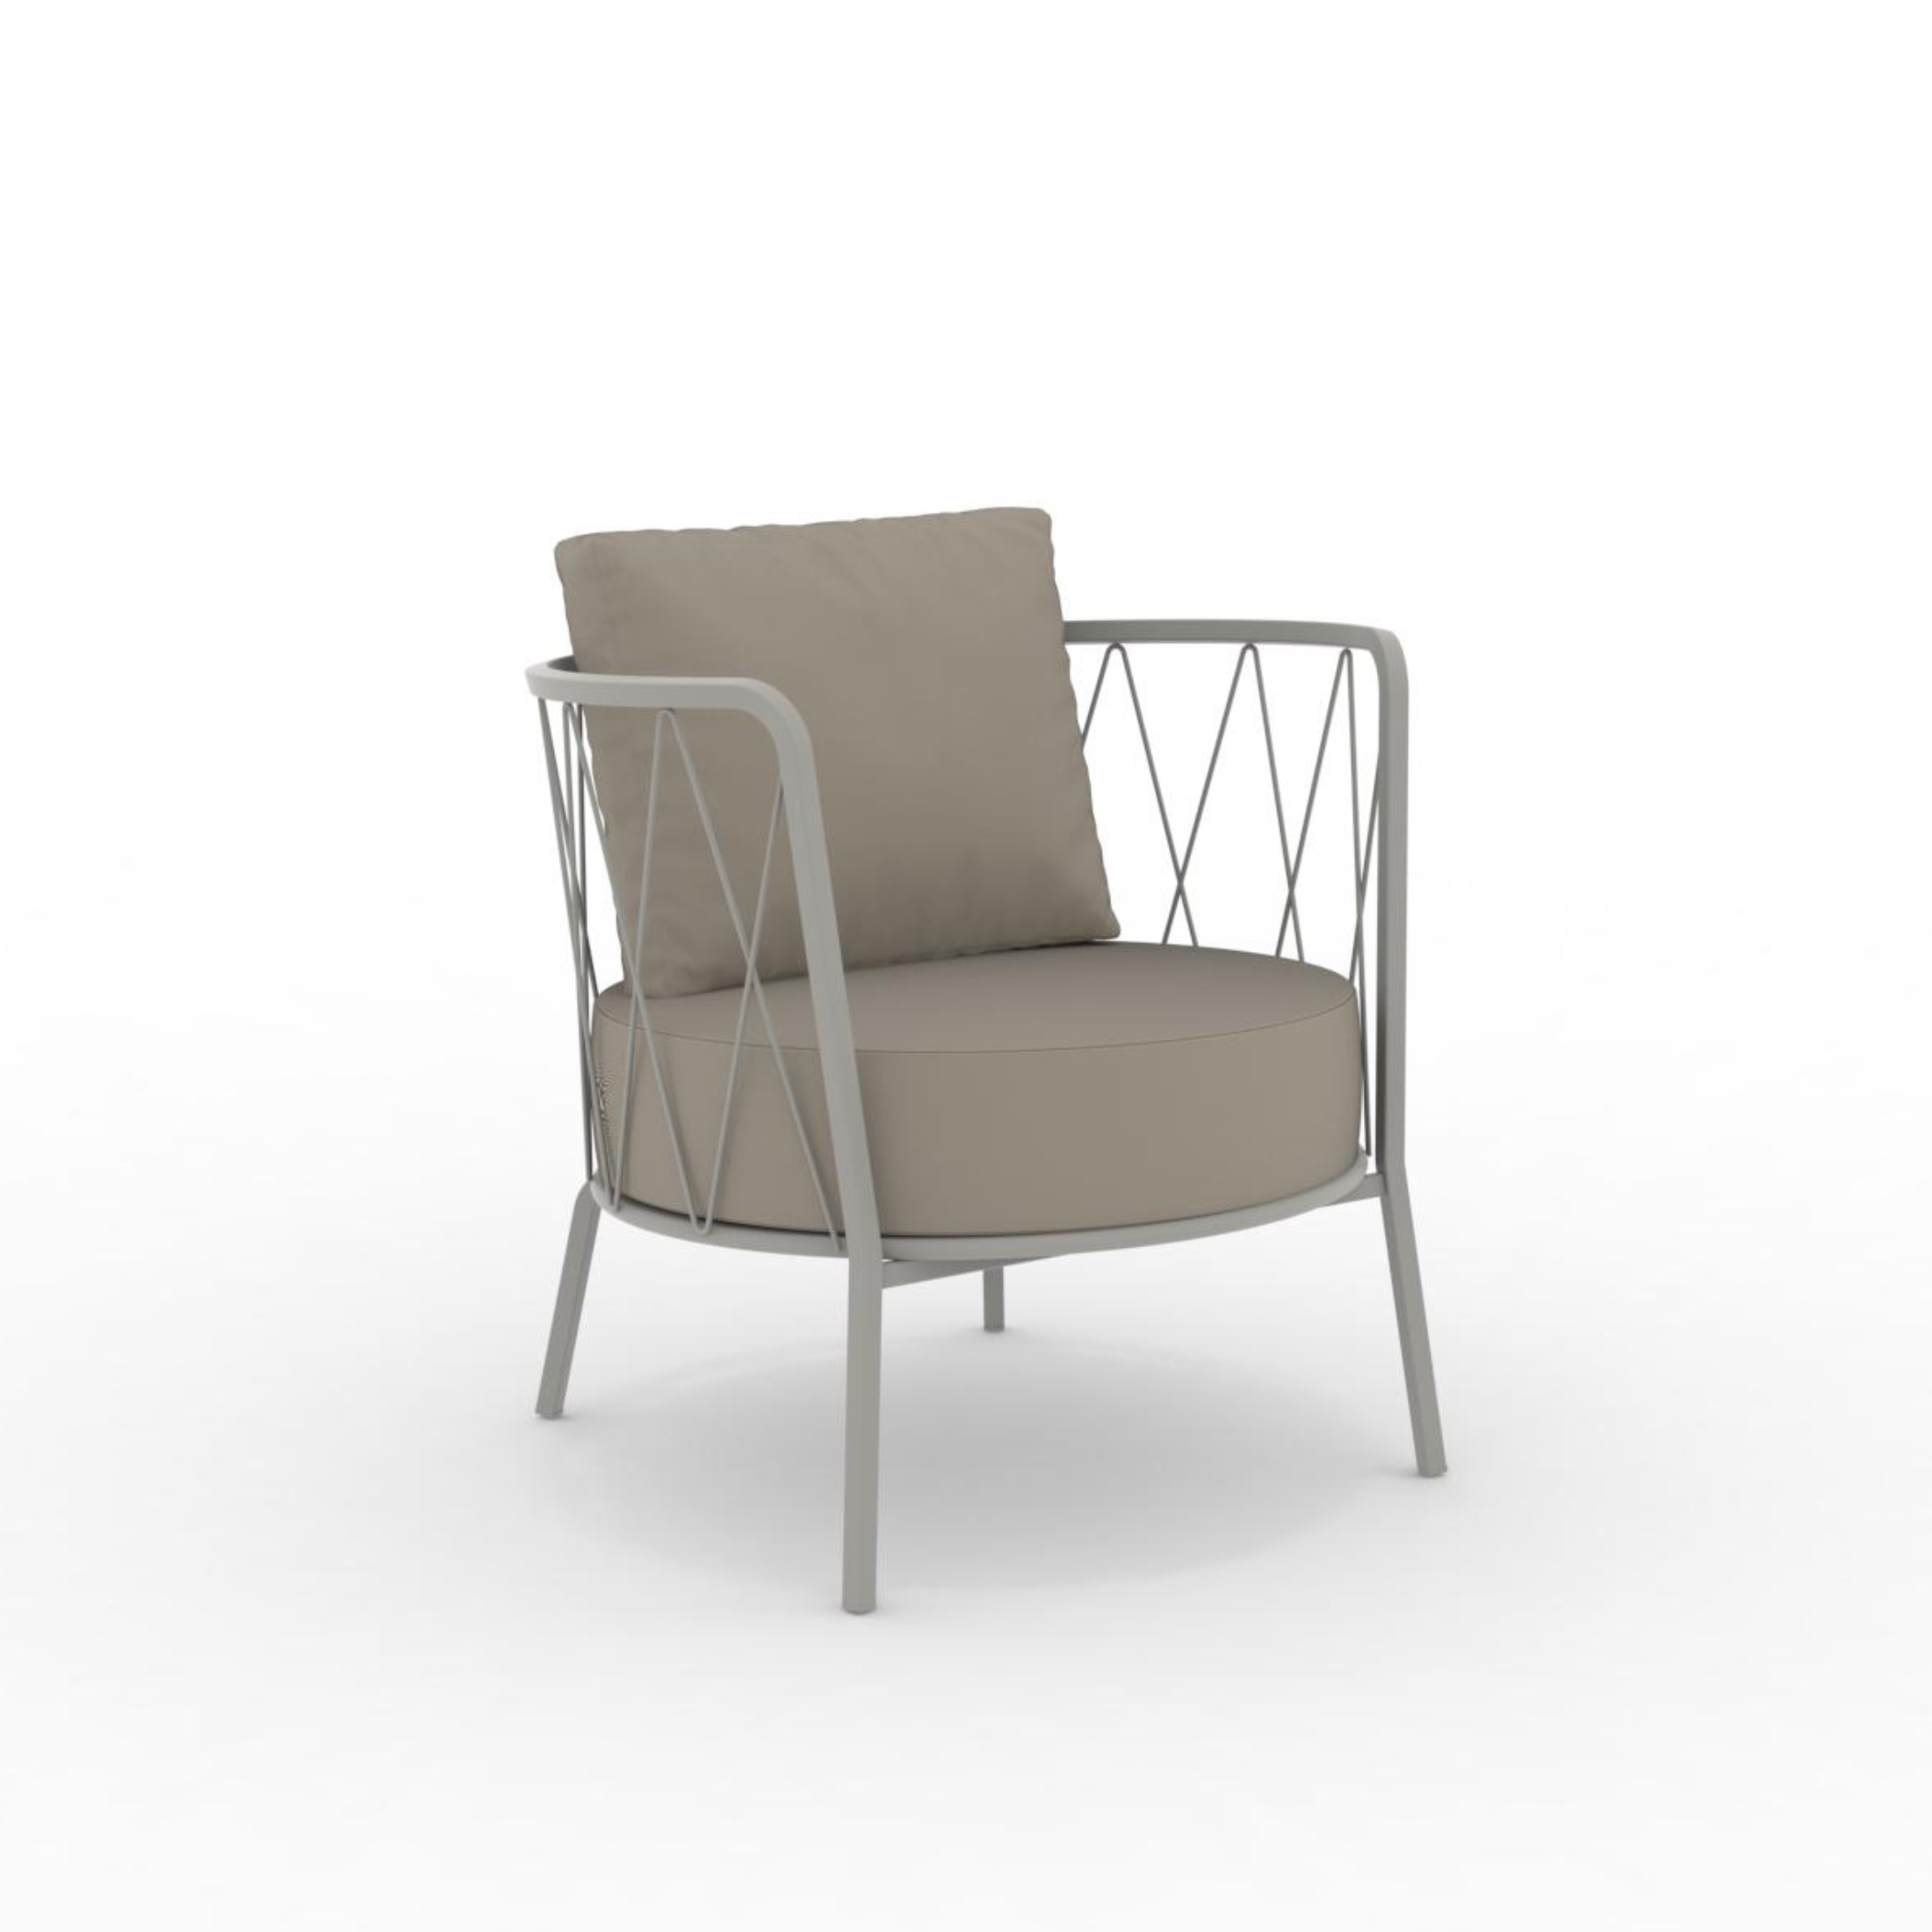 Fauteuil bas en métal galvanisé chaise longue de jardin "Daisy12" 73x73 cm 71h